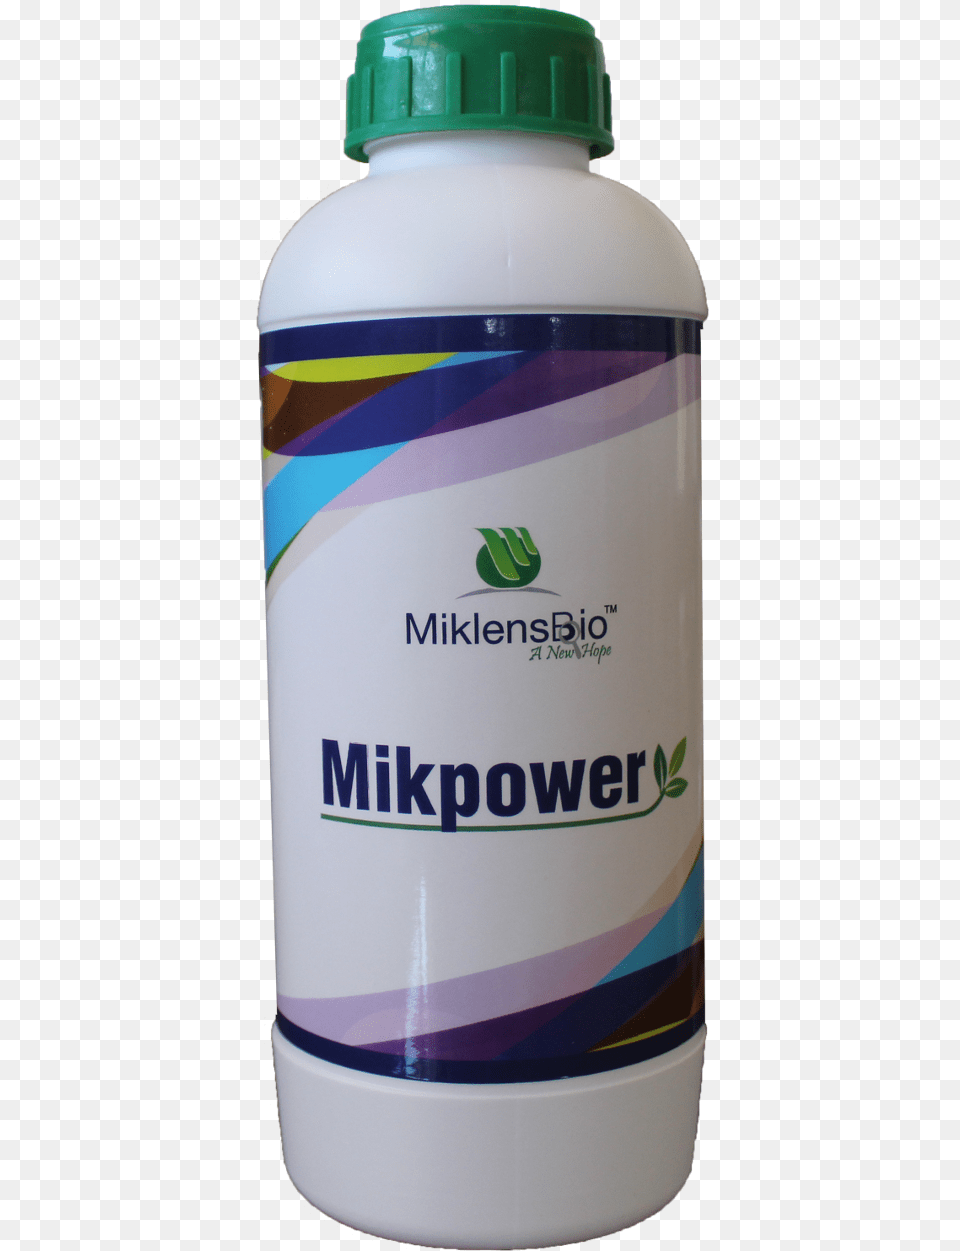 Miklens Bio Herb, Bottle, Shaker Free Png Download